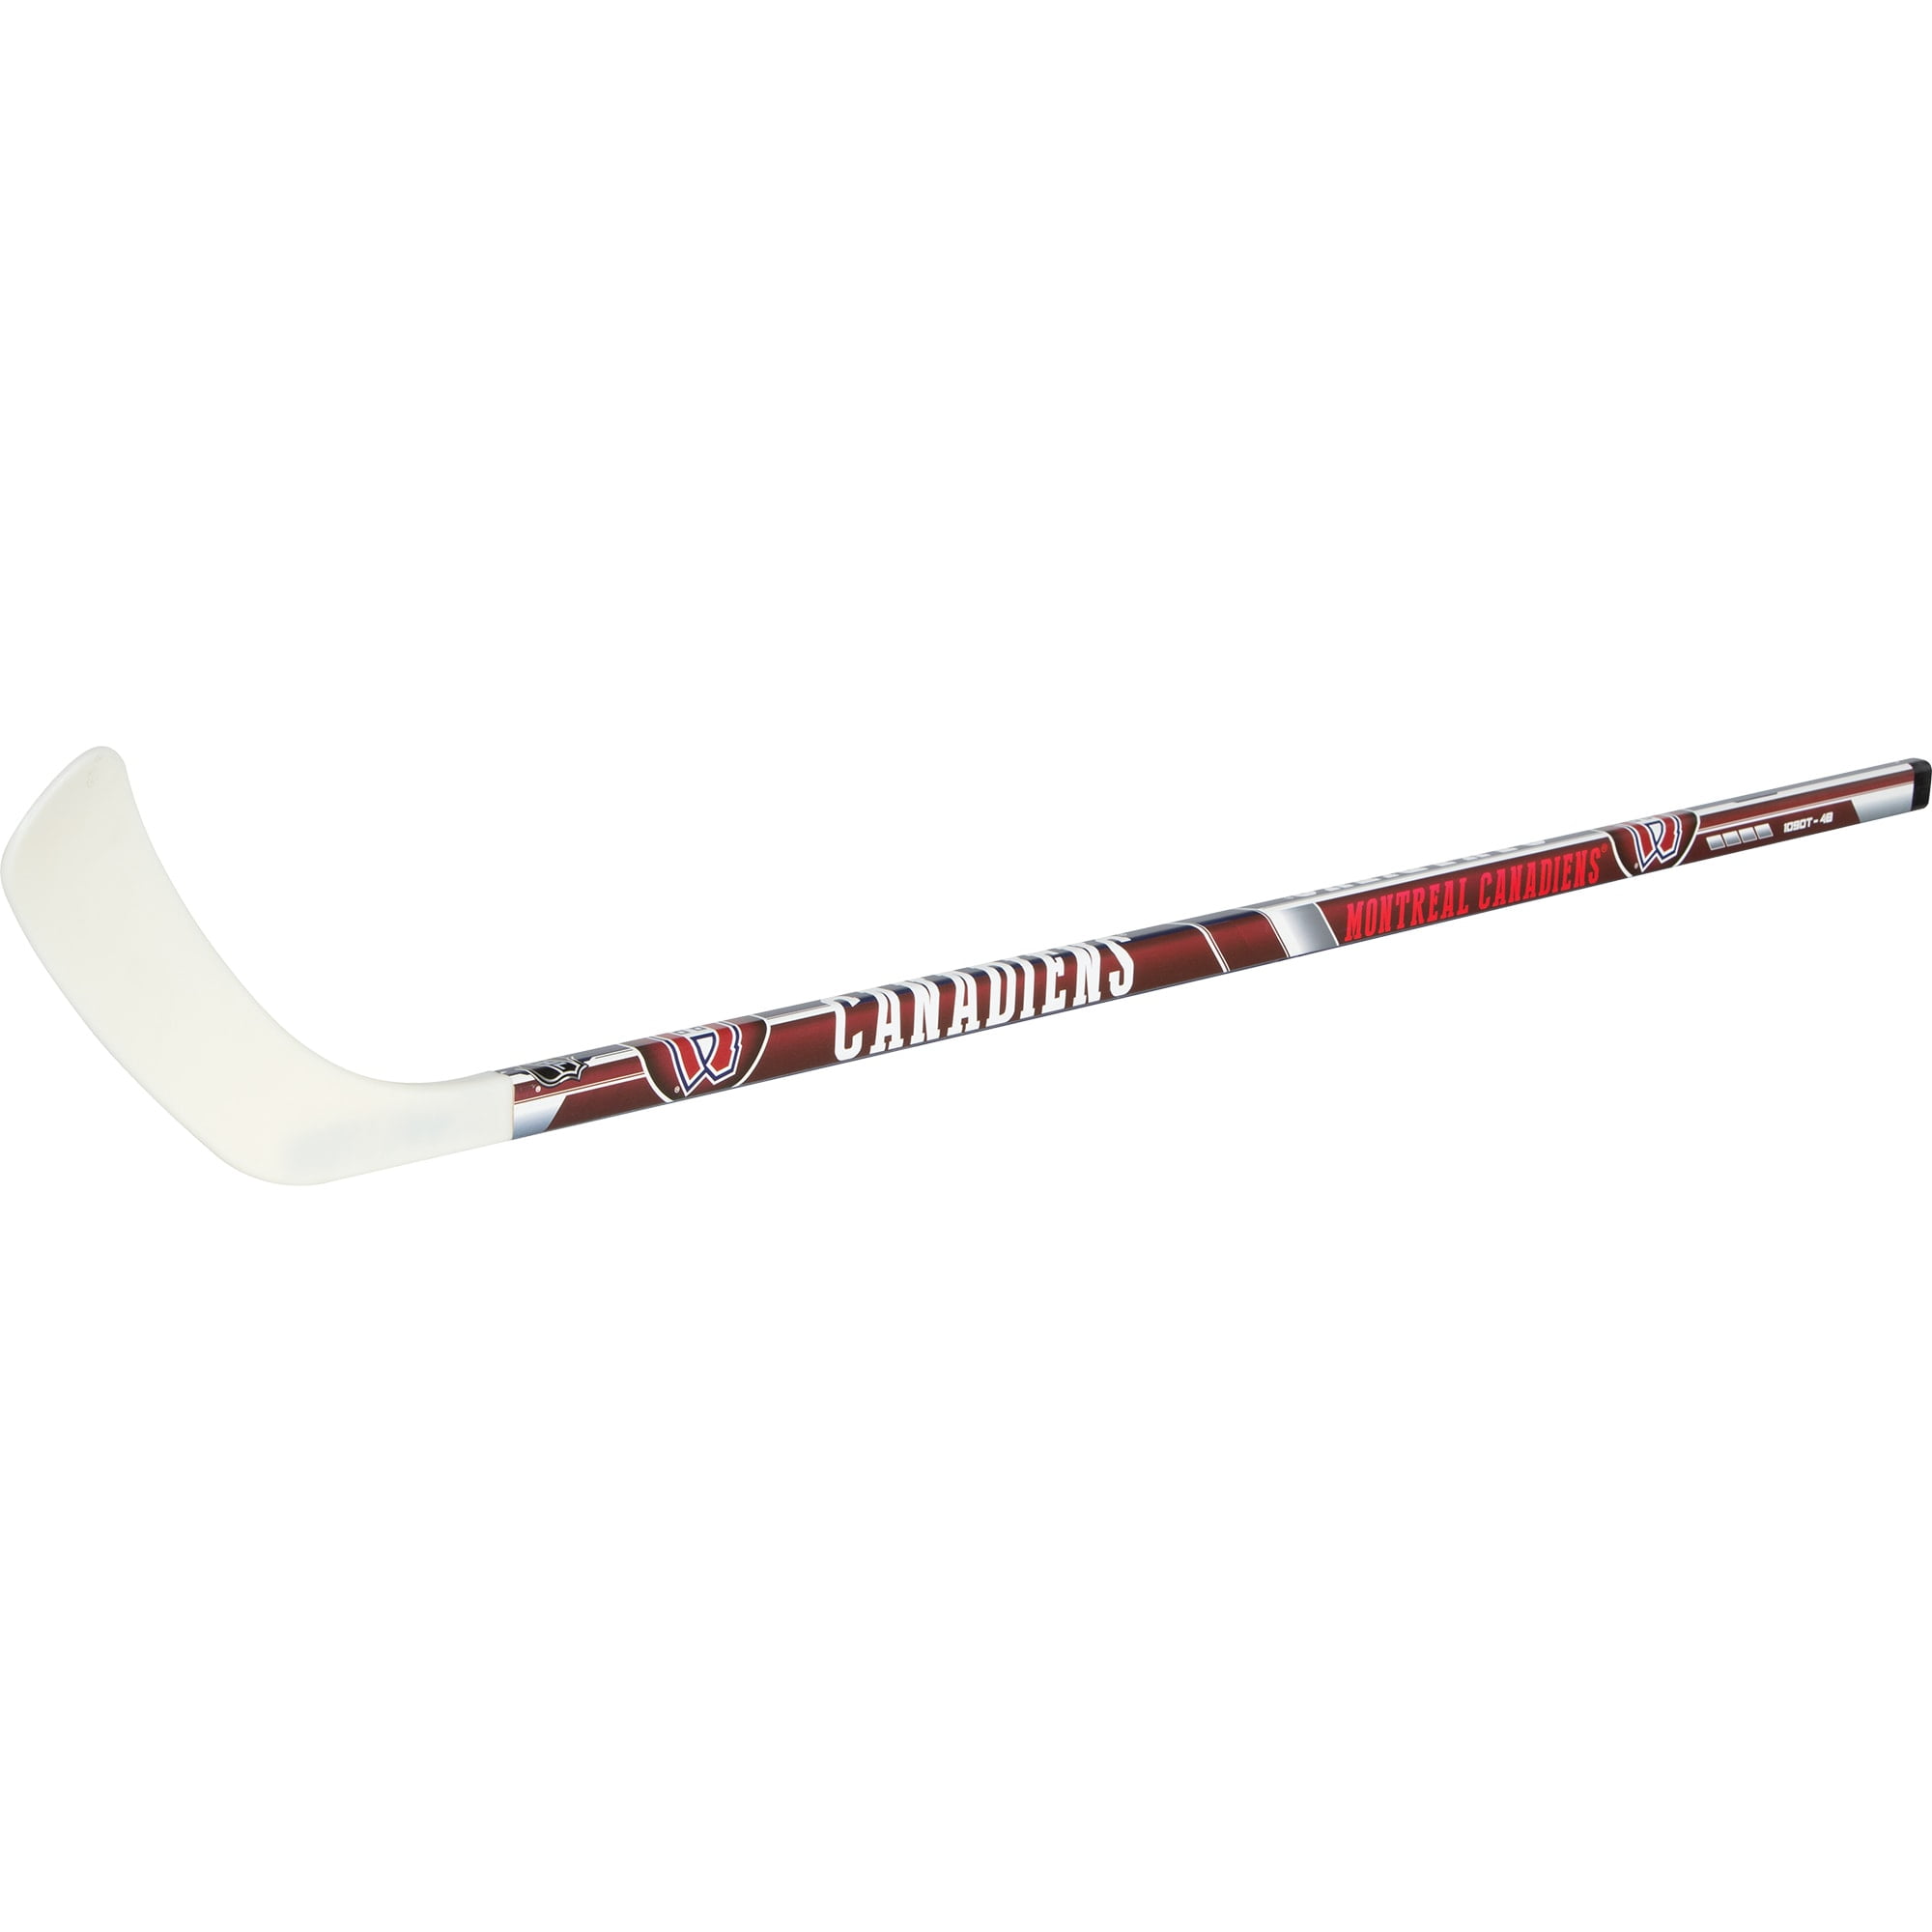 Washington Capitals Hockey Sticks 21 H